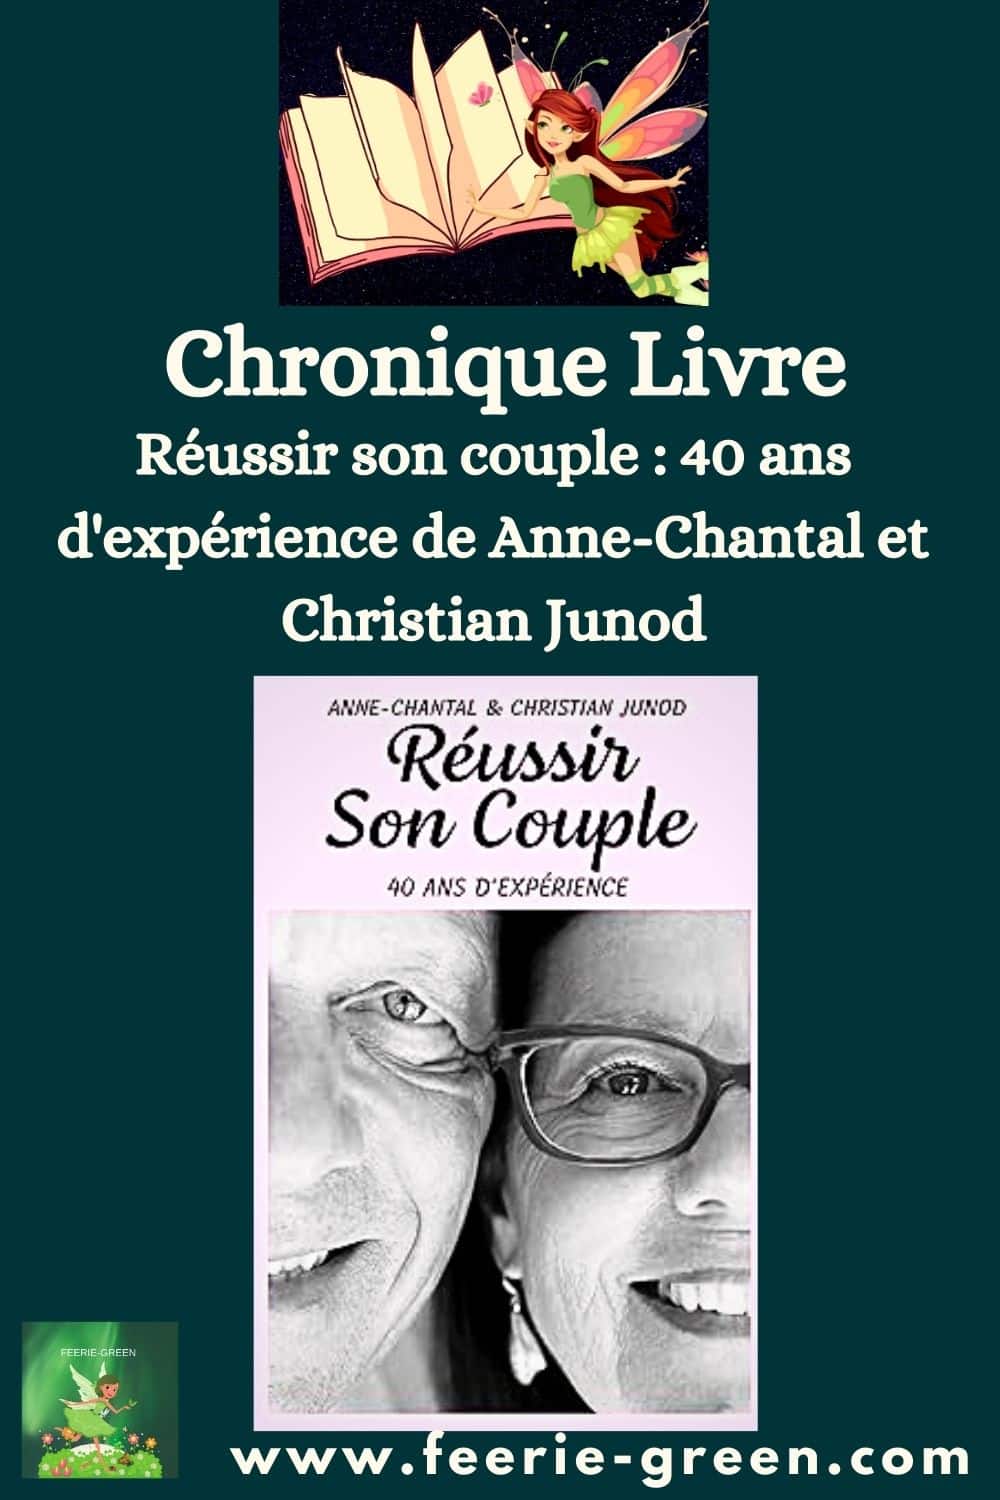 Réussir son couple 40 ans d'expérience de Anne-Chantal et Christian Junod - pinterest